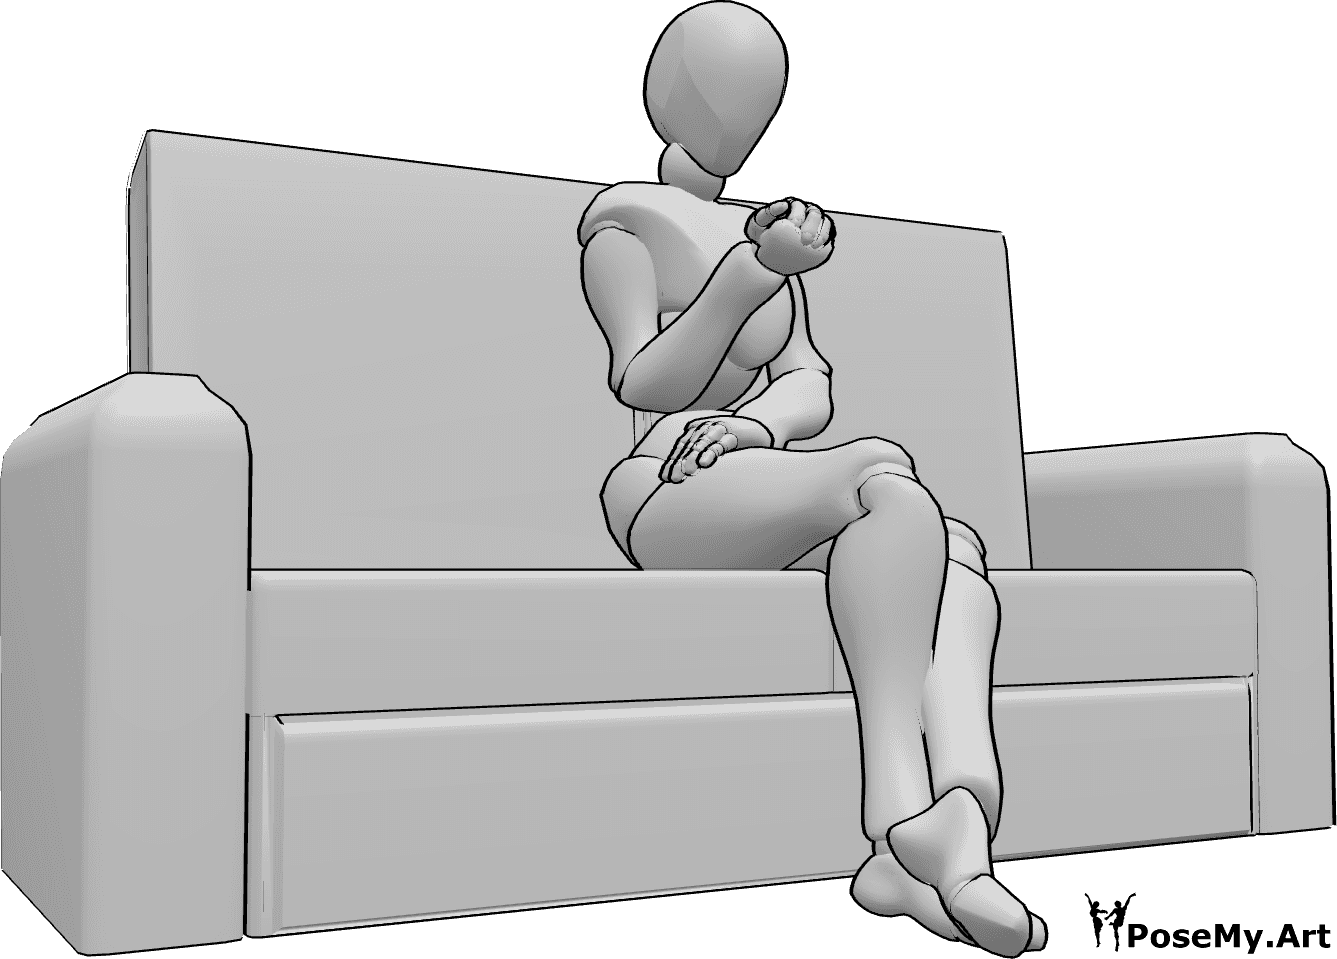 Posen-Referenz- Weibliche sitzende Wartepose - Frau sitzt mit gekreuzten Beinen auf der Couch, wartet auf etwas, betrachtet ihre Nägel